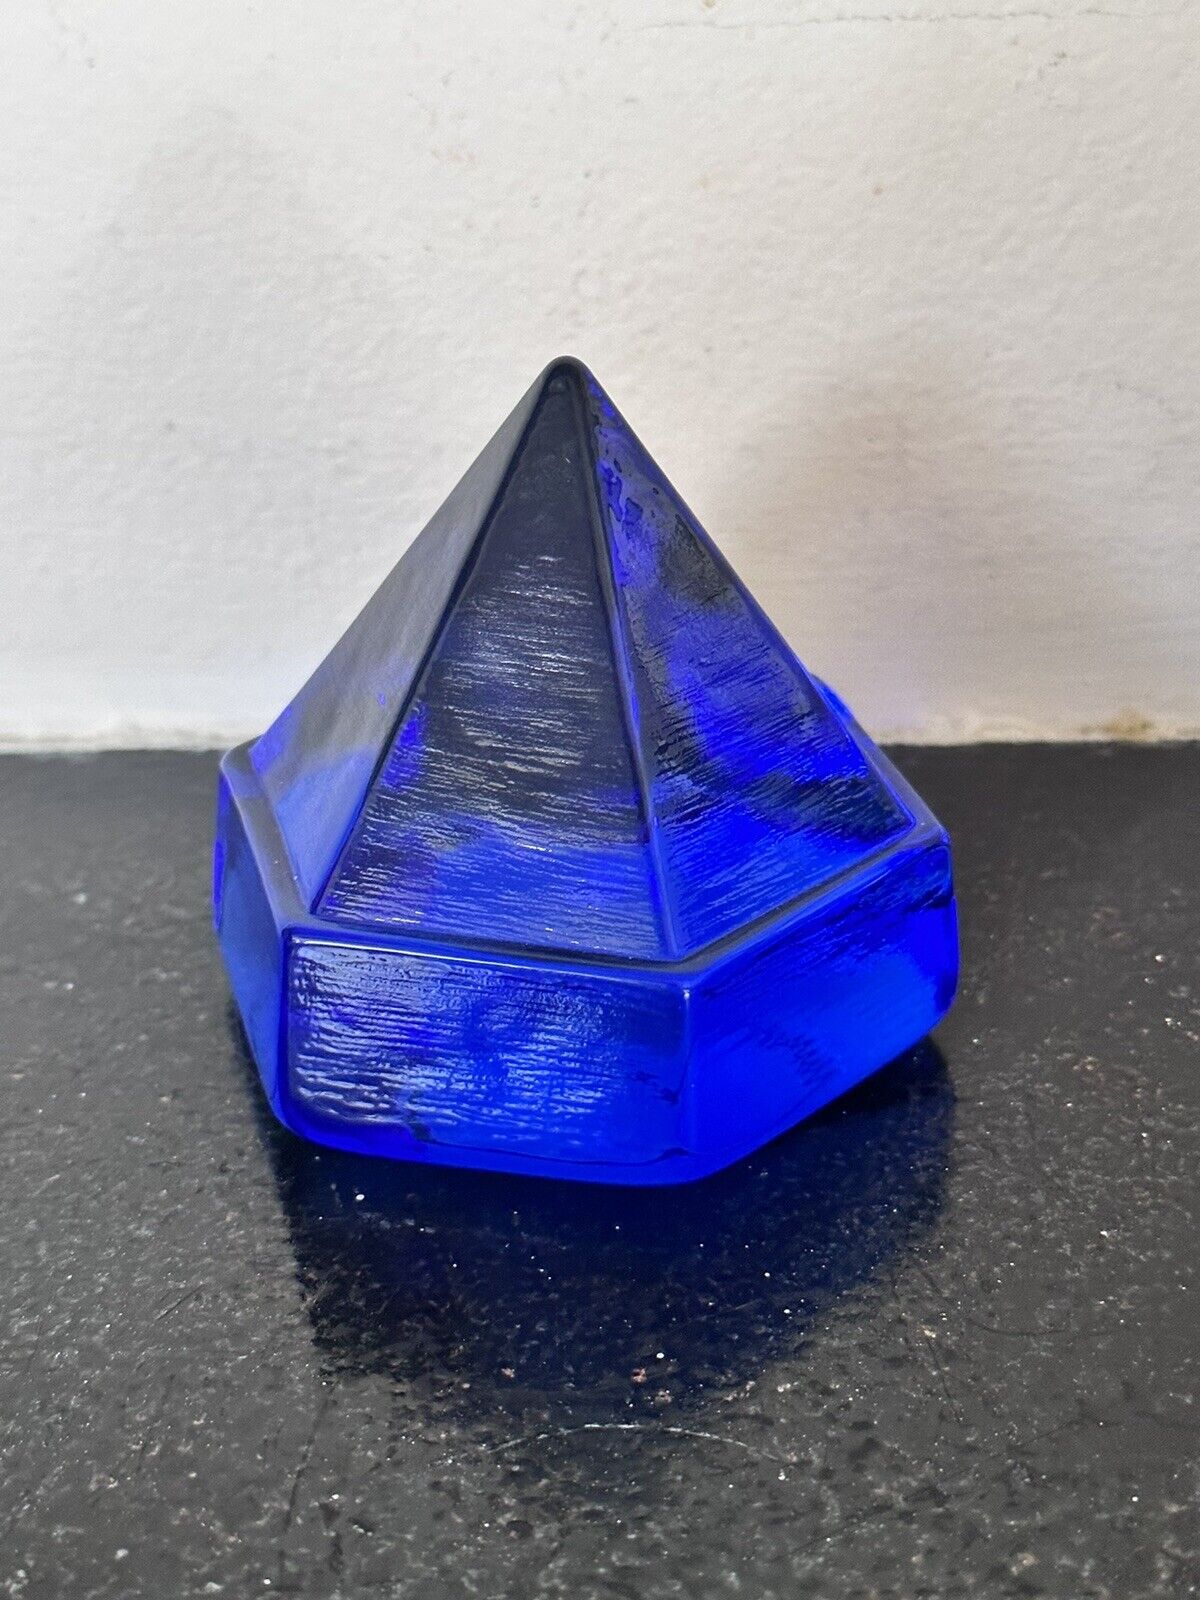 Ship Deck Prism Cobalt Blue Hexagonal Pyramid Art Glass Paperweight